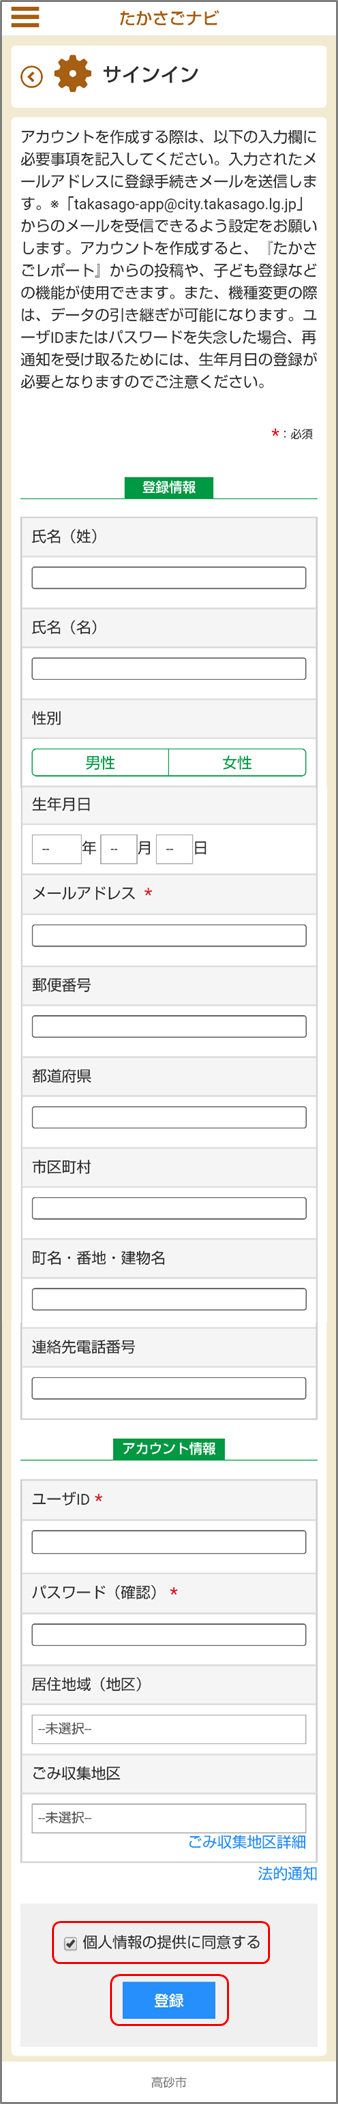 たかさごナビのアカウントを作成するための登録画面のイメージ